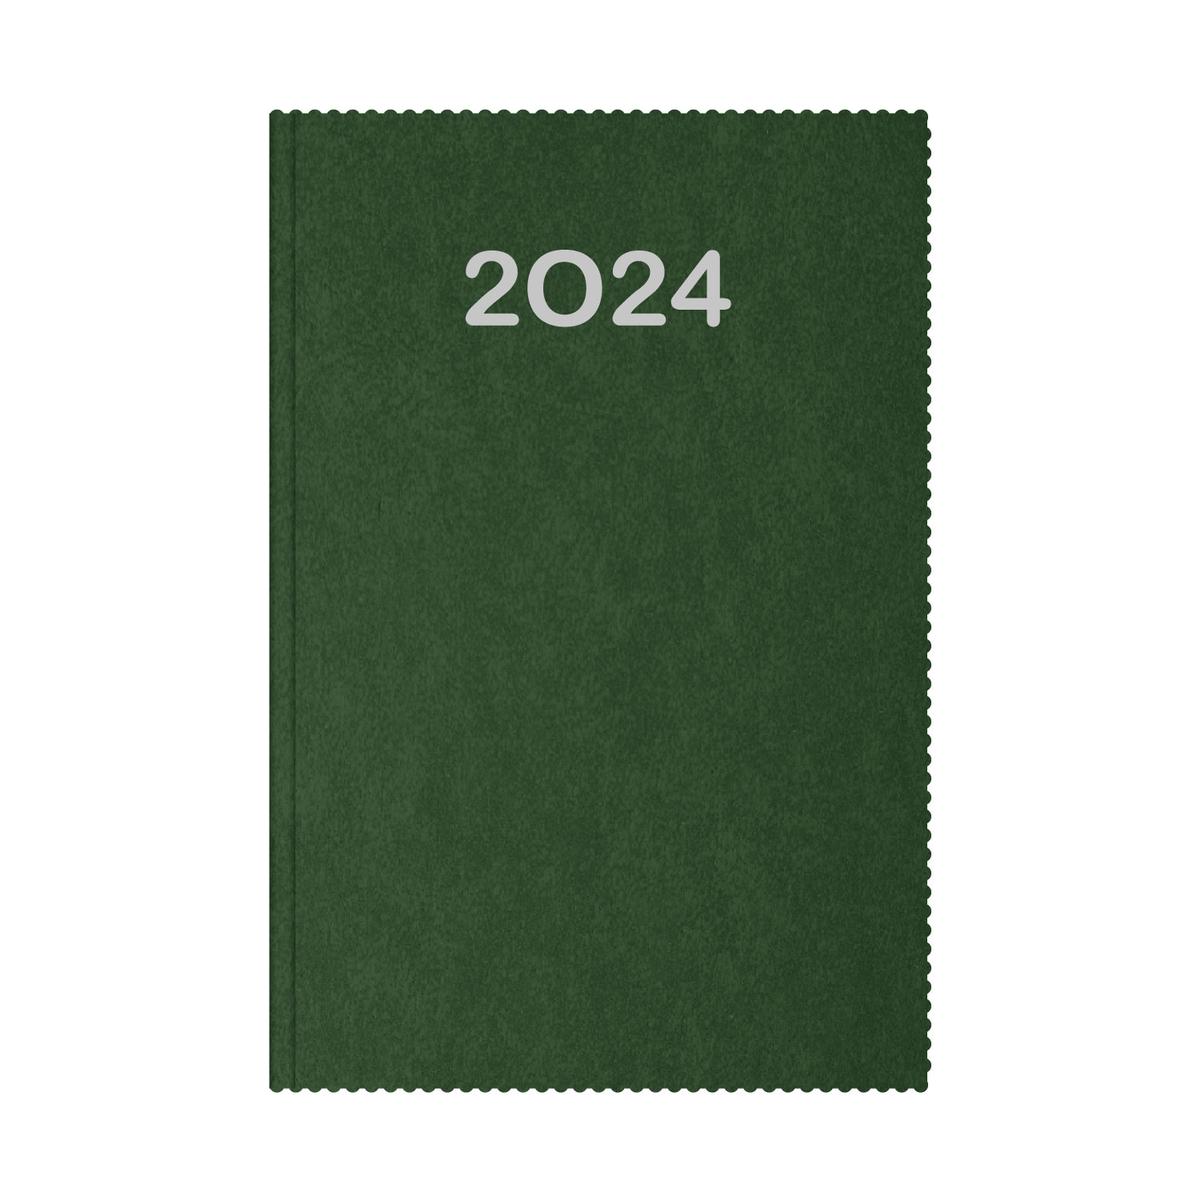 Ημερήσιο ημερολόγιο 2024 vintage πράσινο 14 x 21 cm